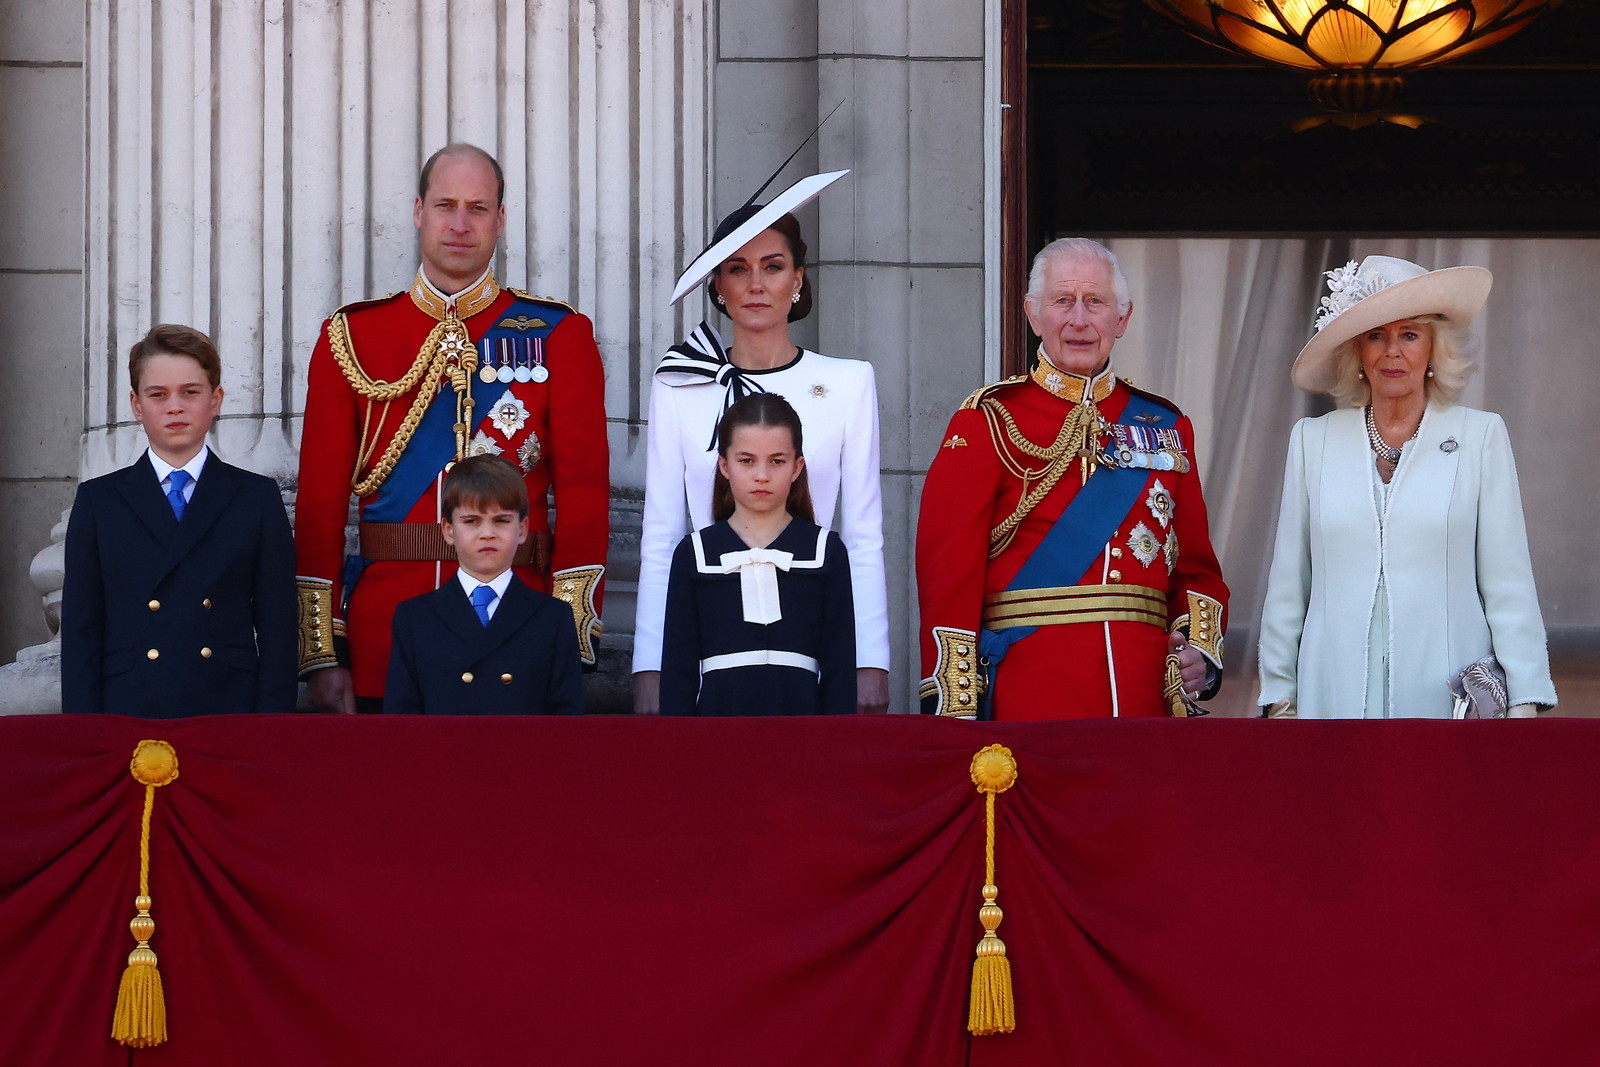 A princesa de Gales, Kate Middleton, apareceu ao lado da família real britânica em varanda do Palácio de Buckingham após participar do Desfile de Aniversário do Rei — Foto: HENRY NICHOLLS/AFP